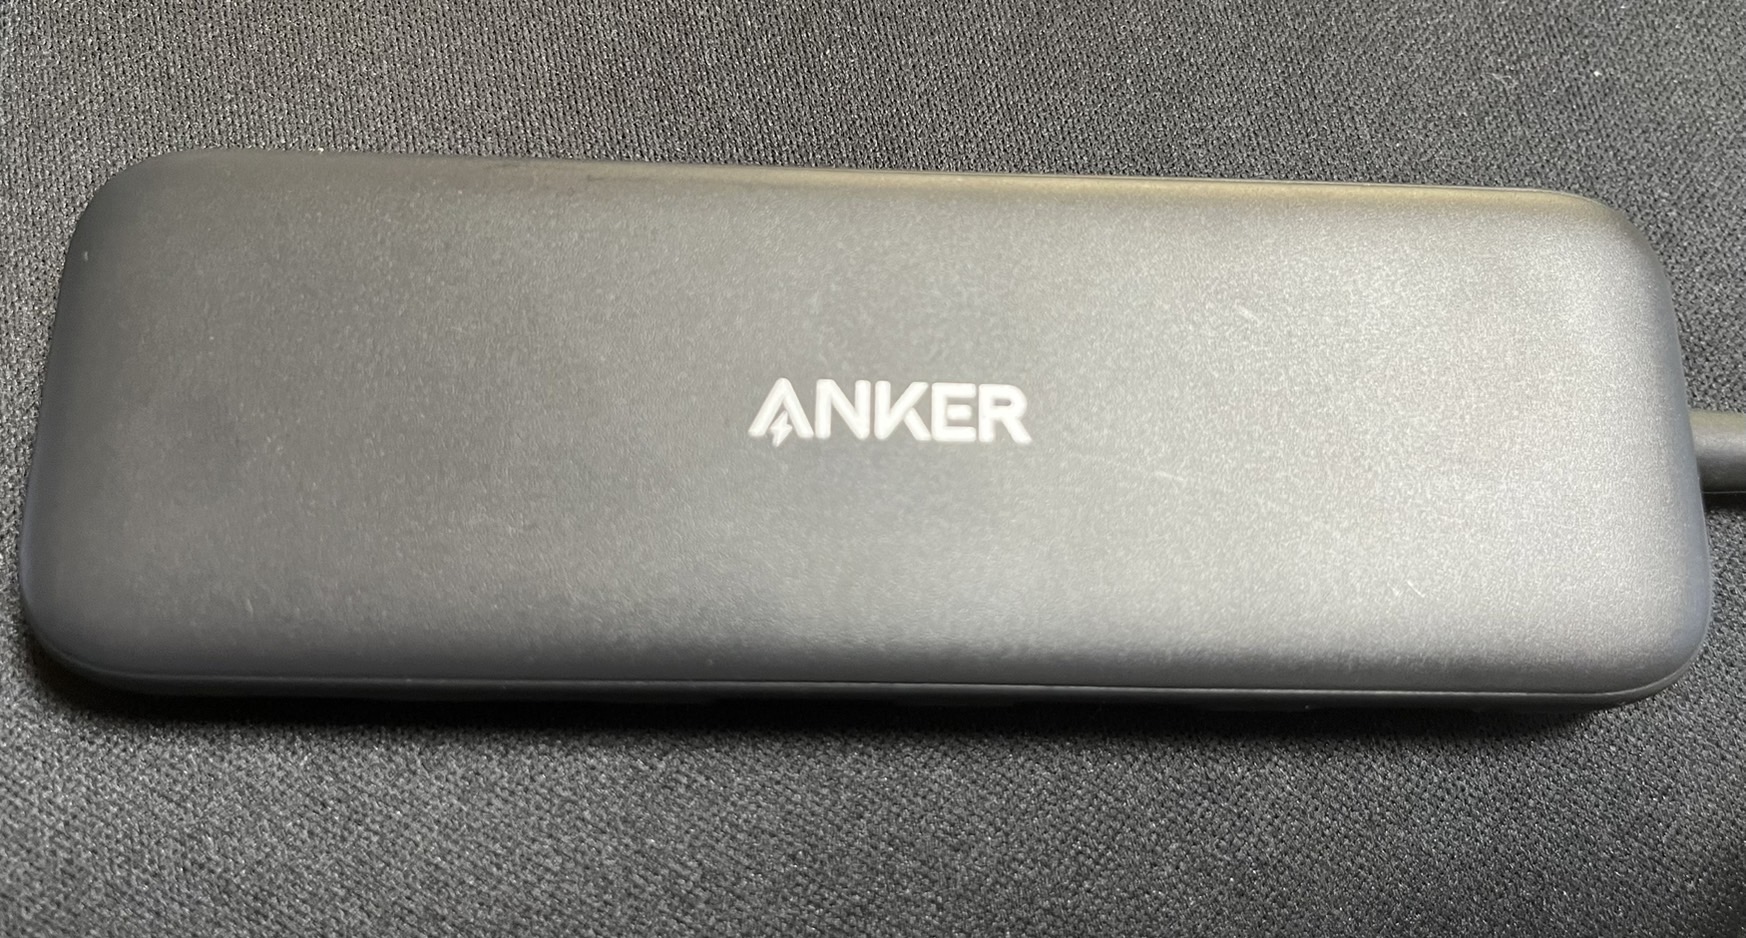 Anker製品】『Anker 332 USB-C ハブ(5-in-1)』を半年使ってみた